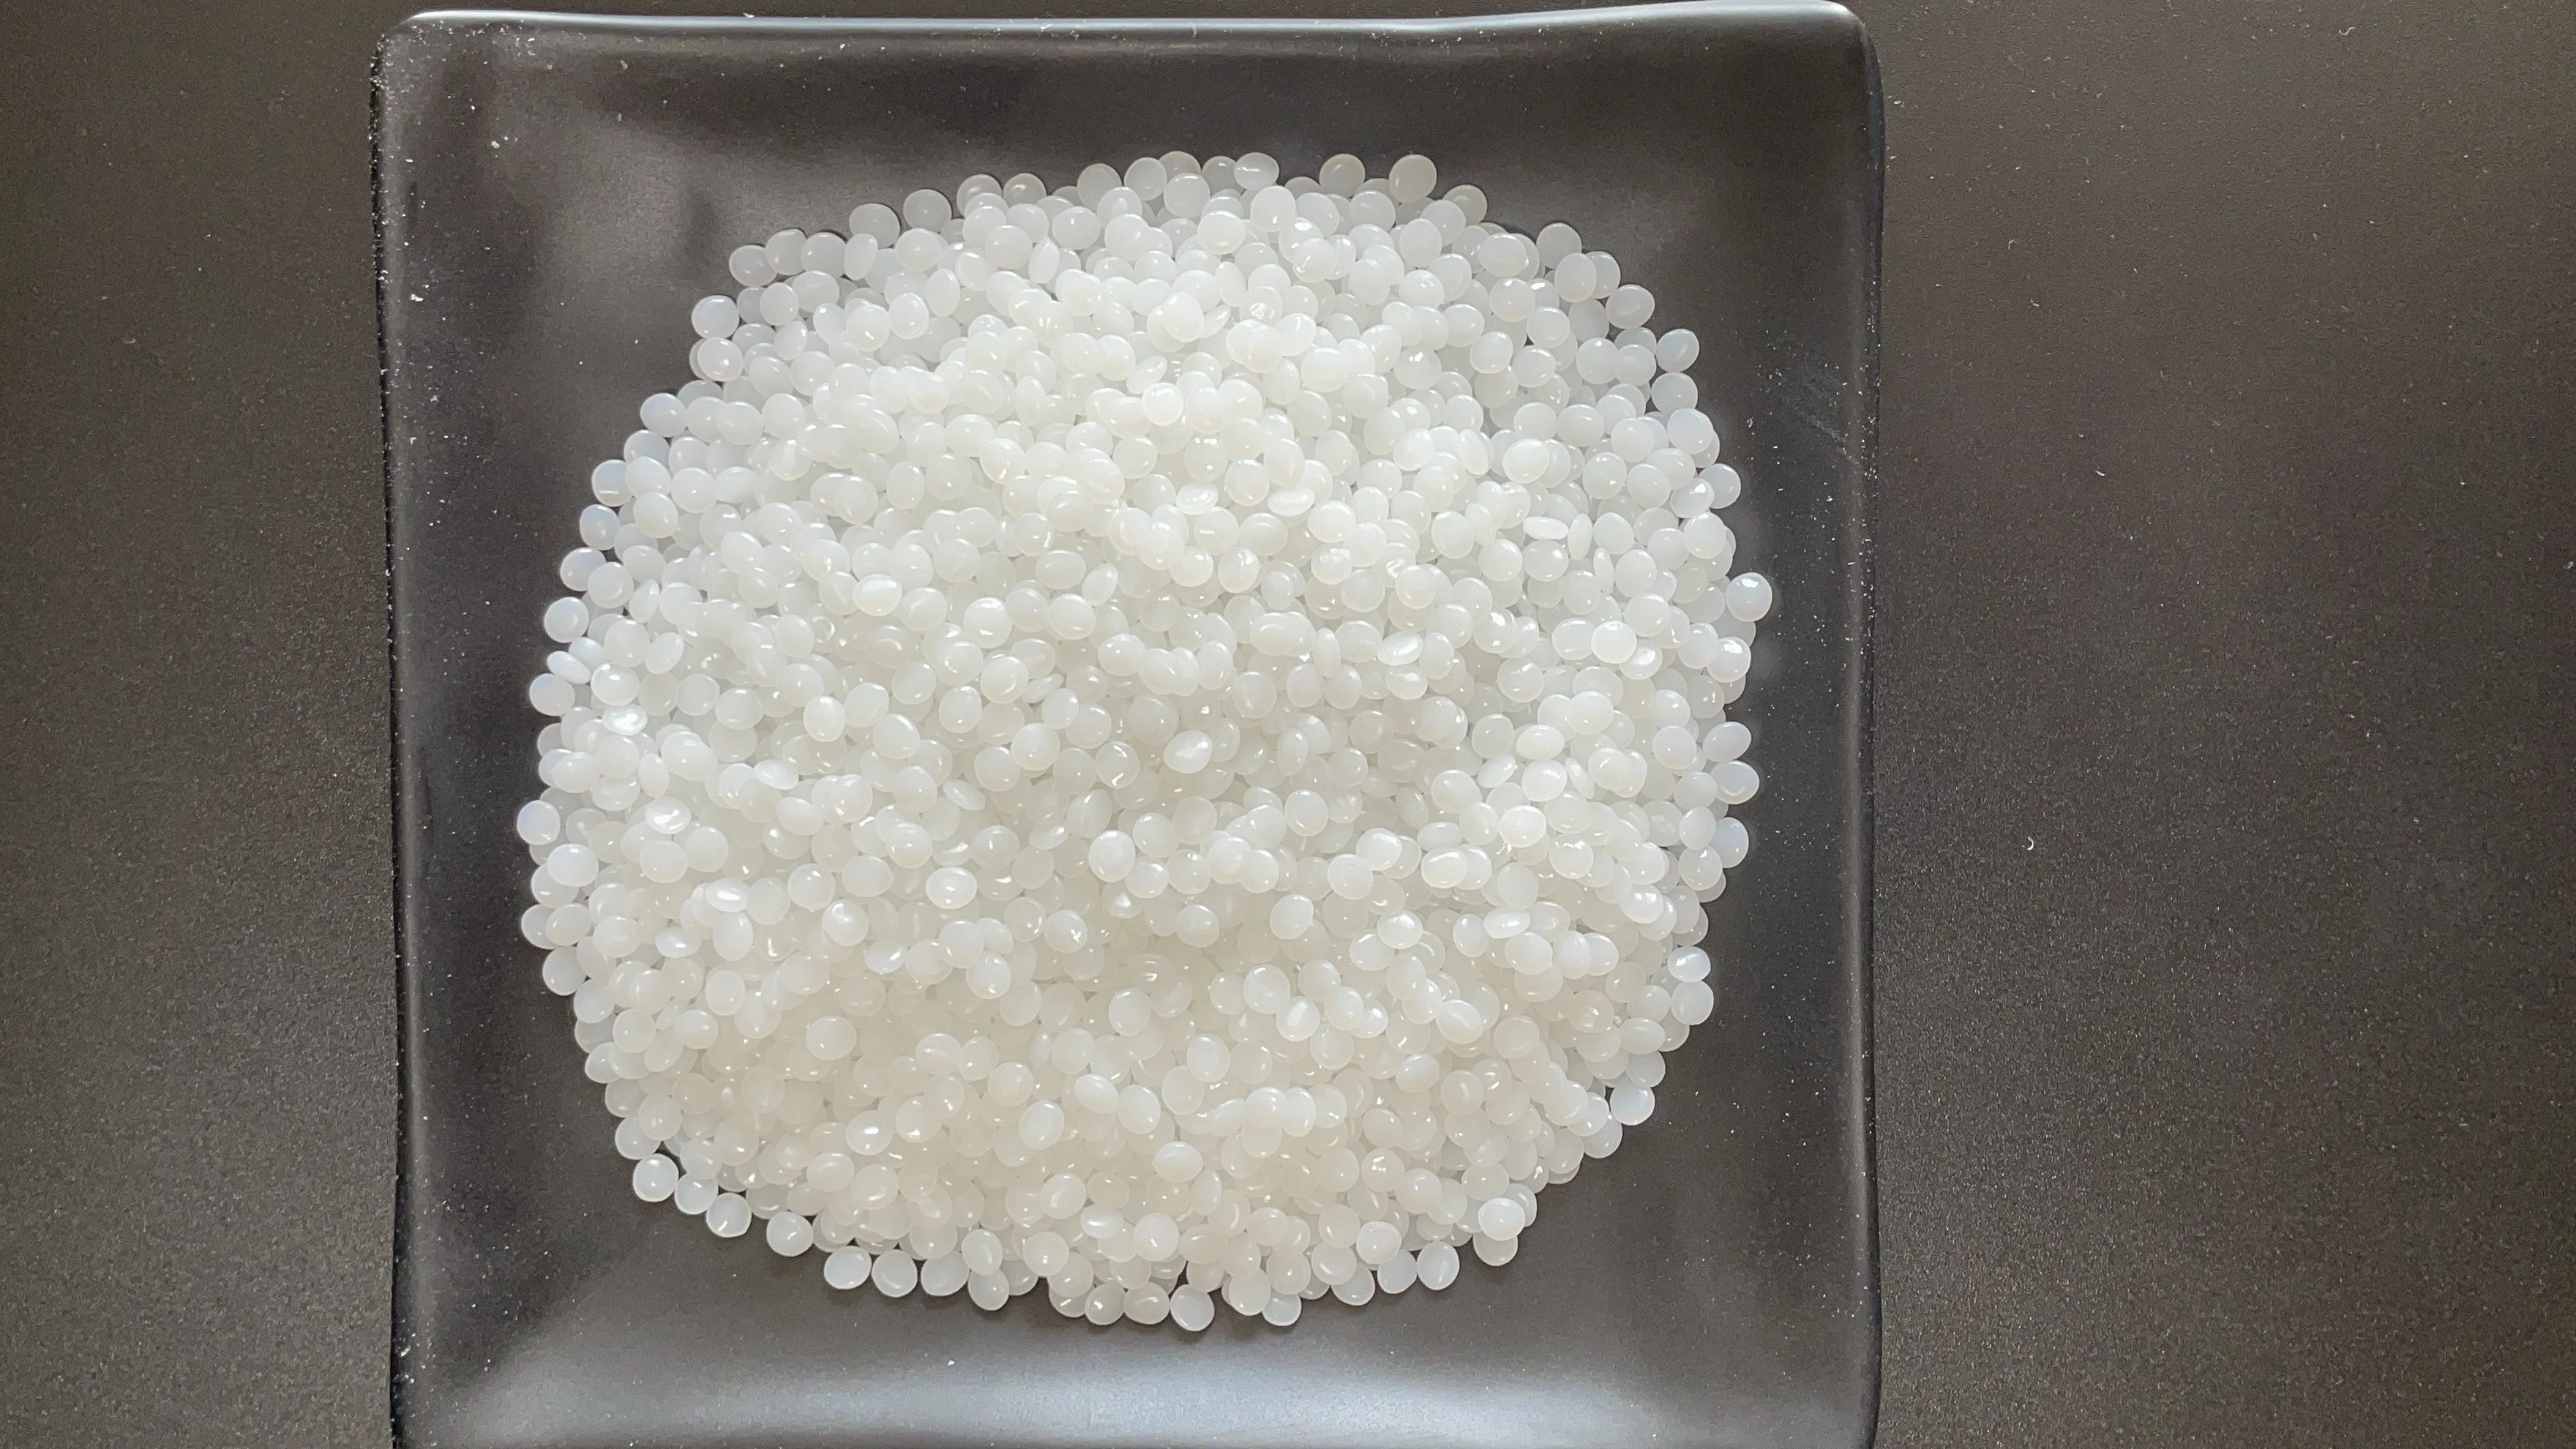 Изделие из полиэтилена прозрачно как будет выглядеть высыпанная на стол кучка гранул полиэтилена